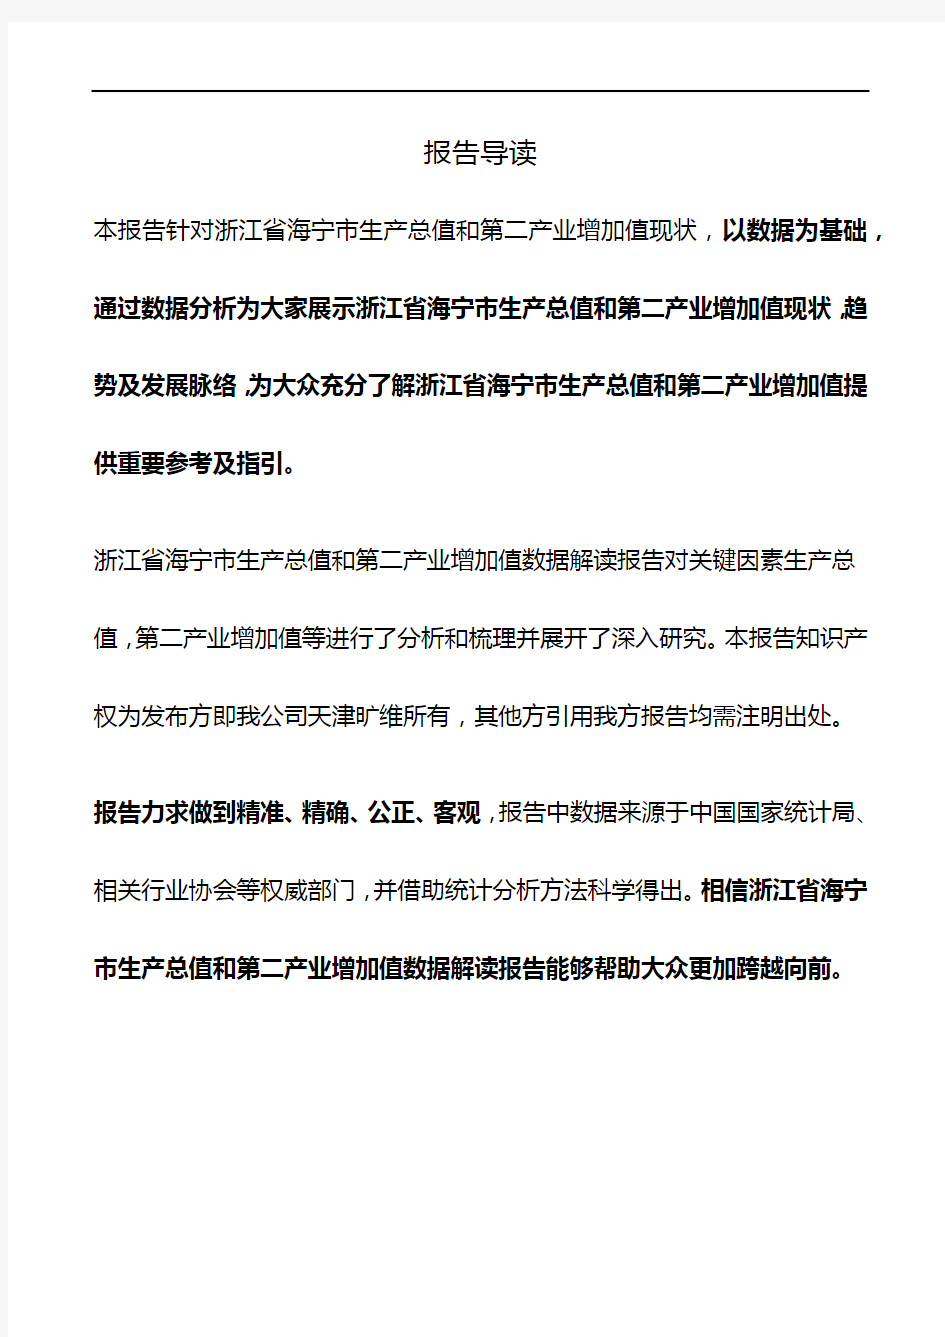 浙江省海宁市生产总值和第二产业增加值3年数据解读报告2019版